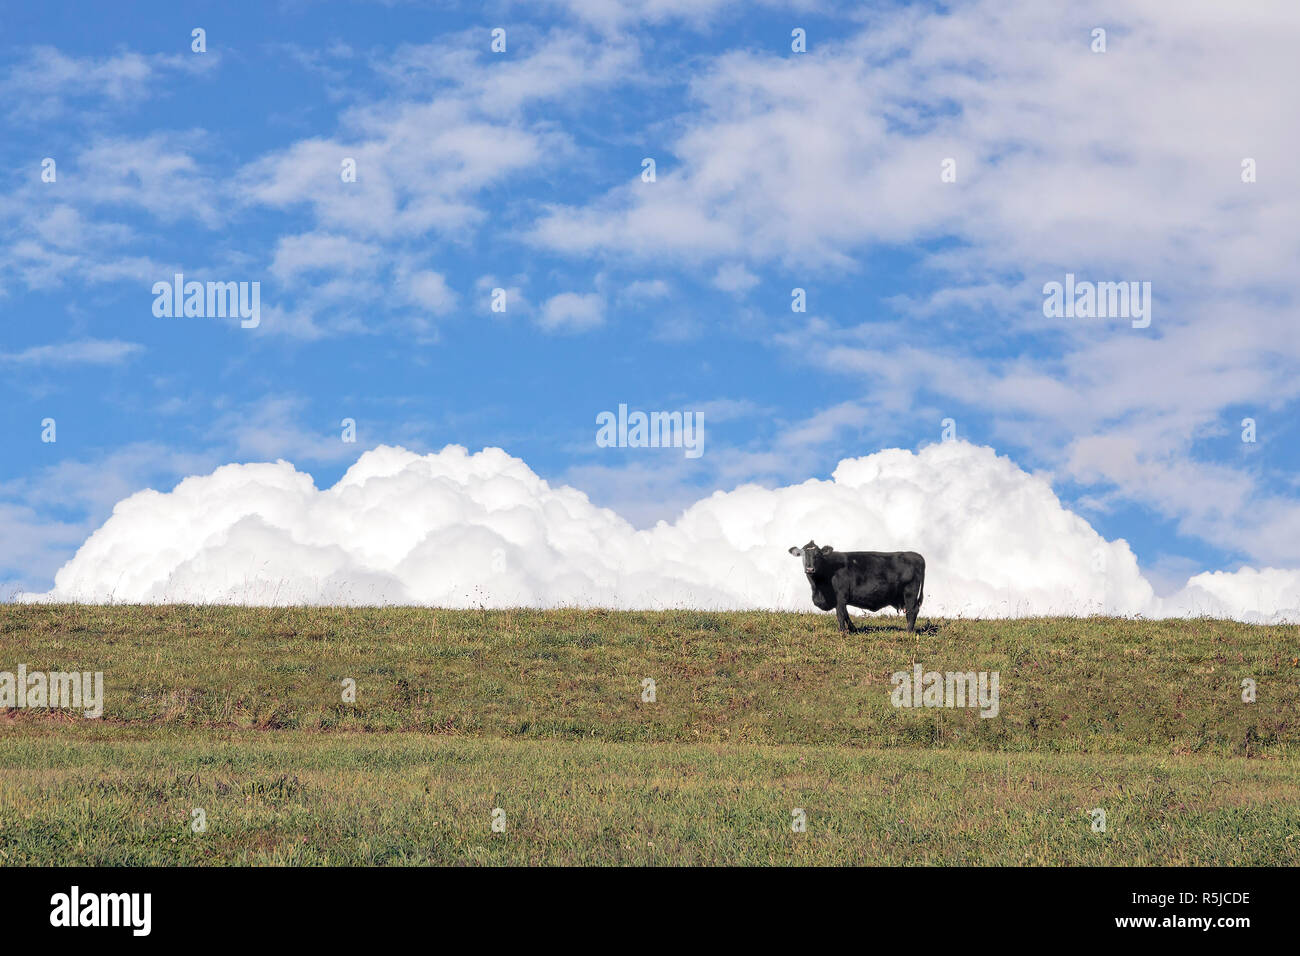 Una mucca nera sorge su una collina sostenuta da puffy nuvole bianche in un profondo cielo blu. Foto Stock